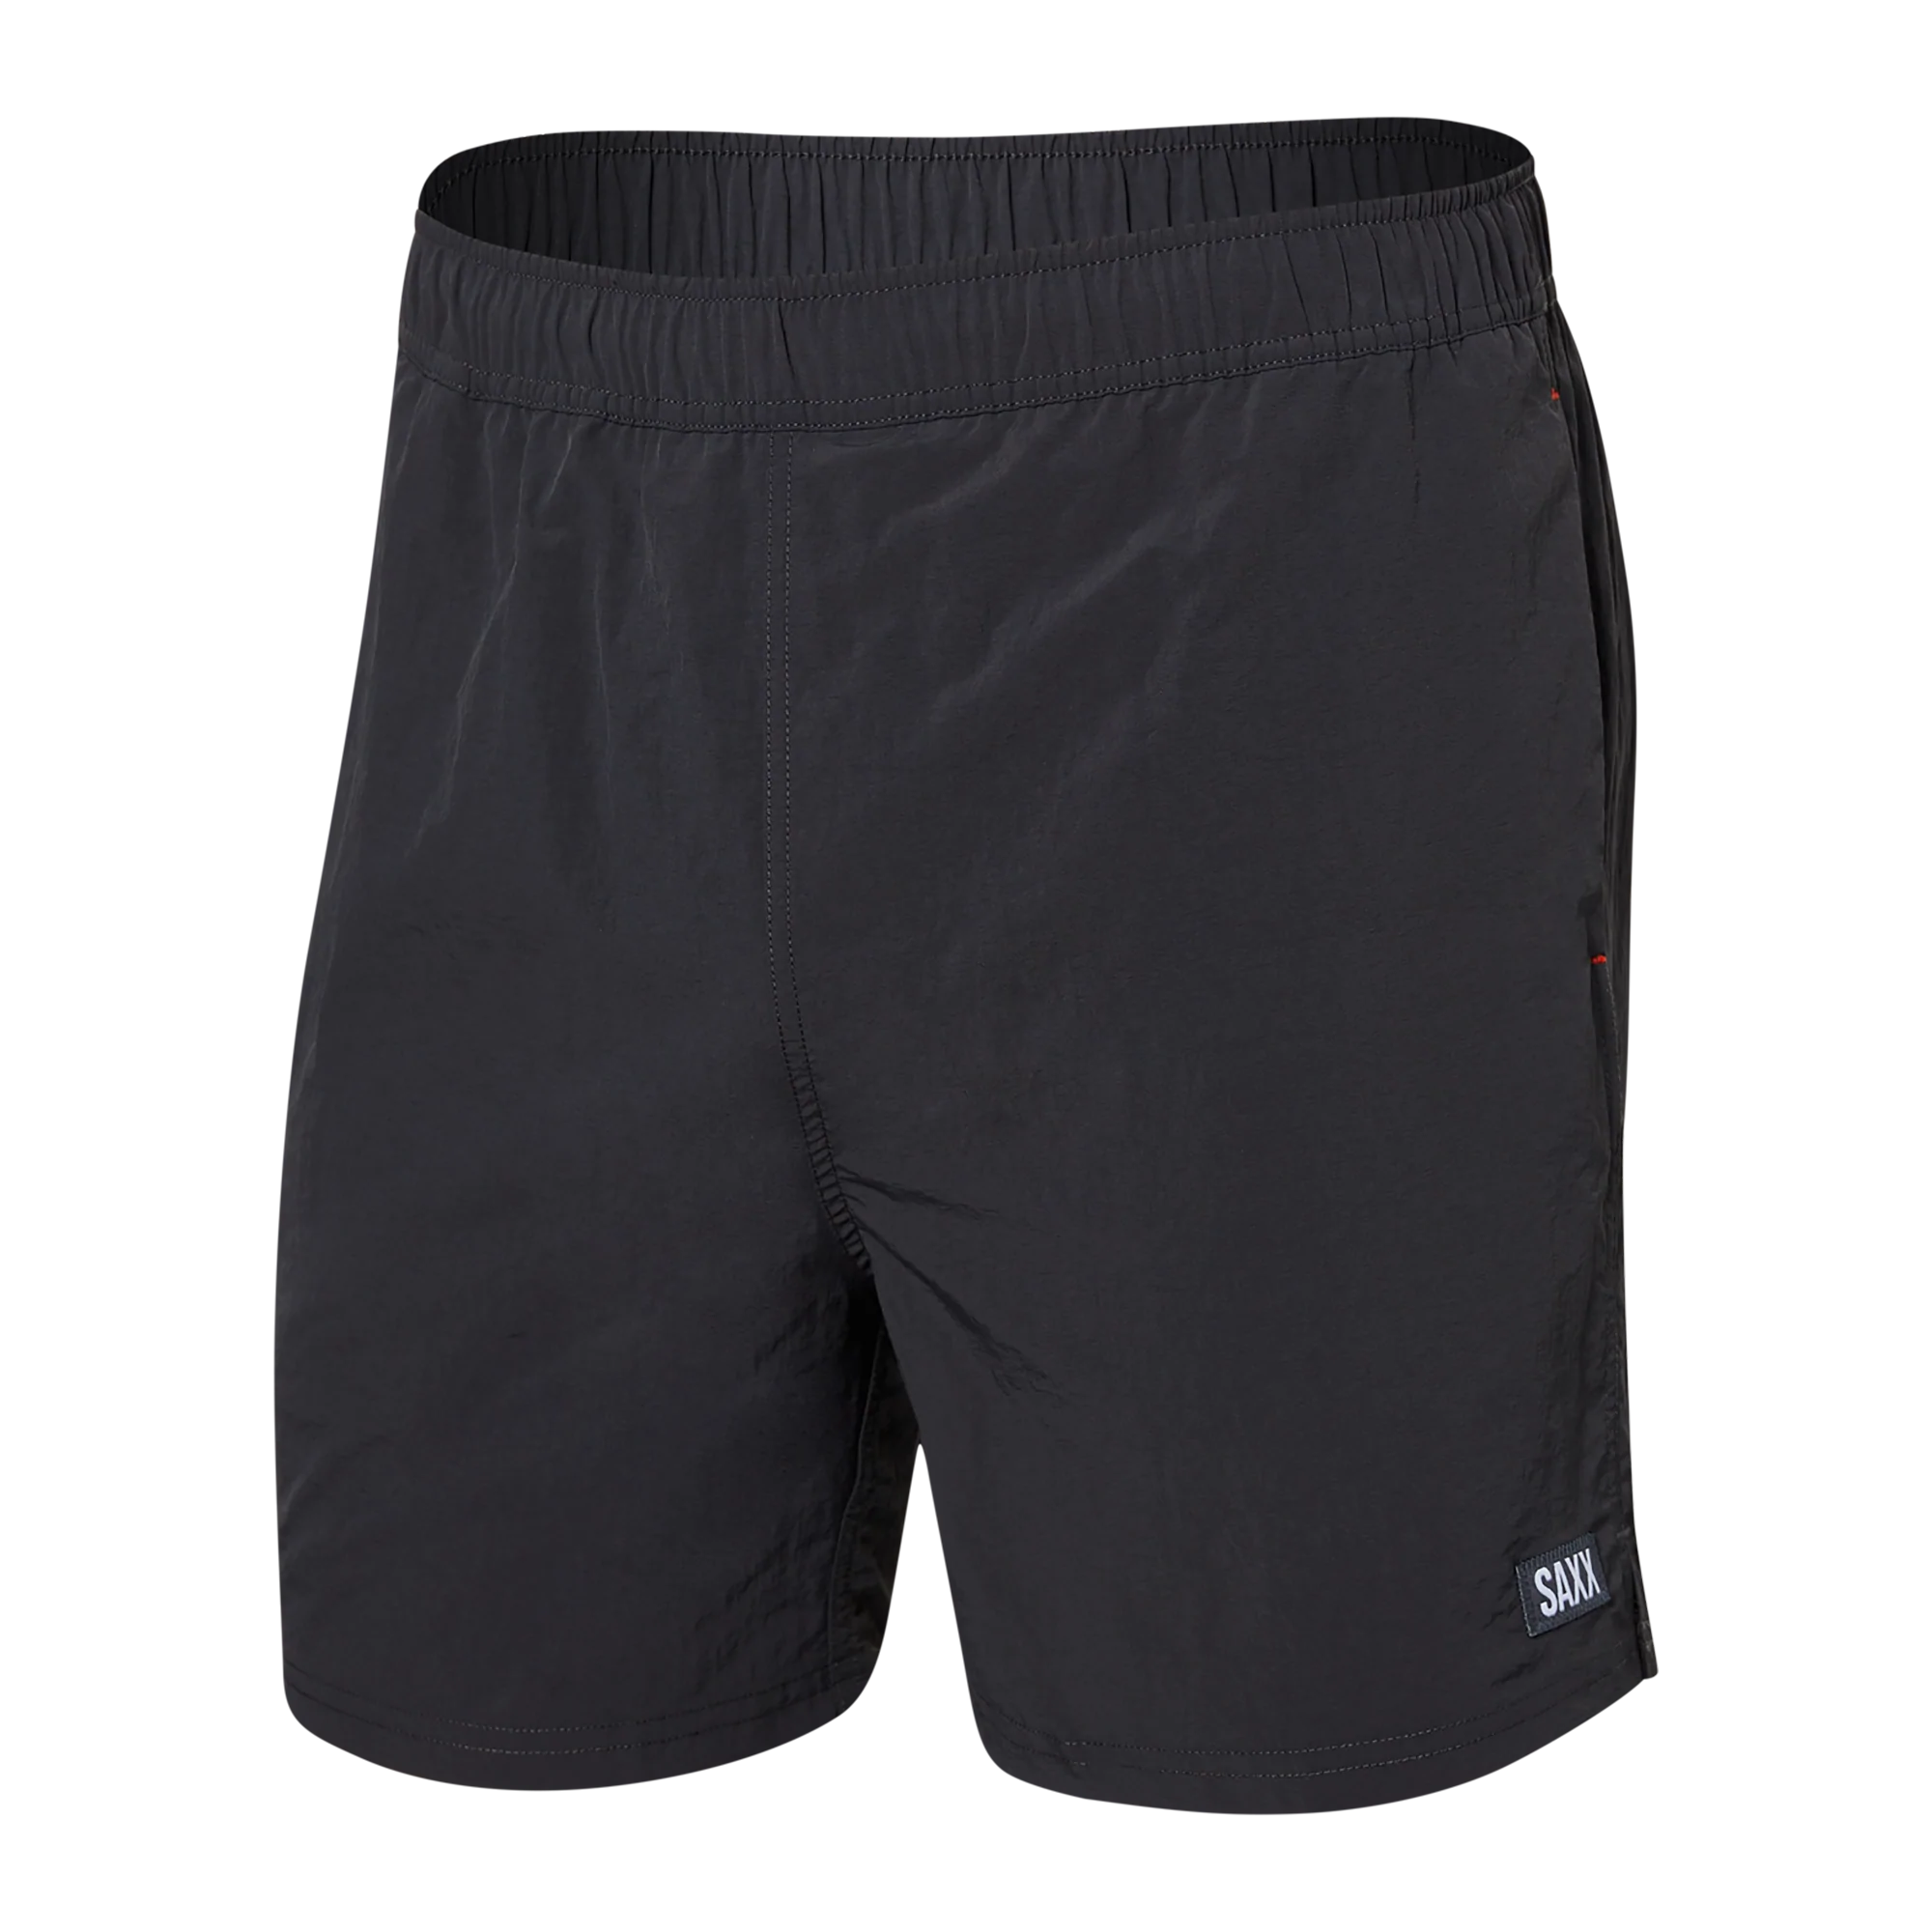 Saxx Underwear Co. Go Coastal 2-n-1 7 Short With Droptemp Hydro